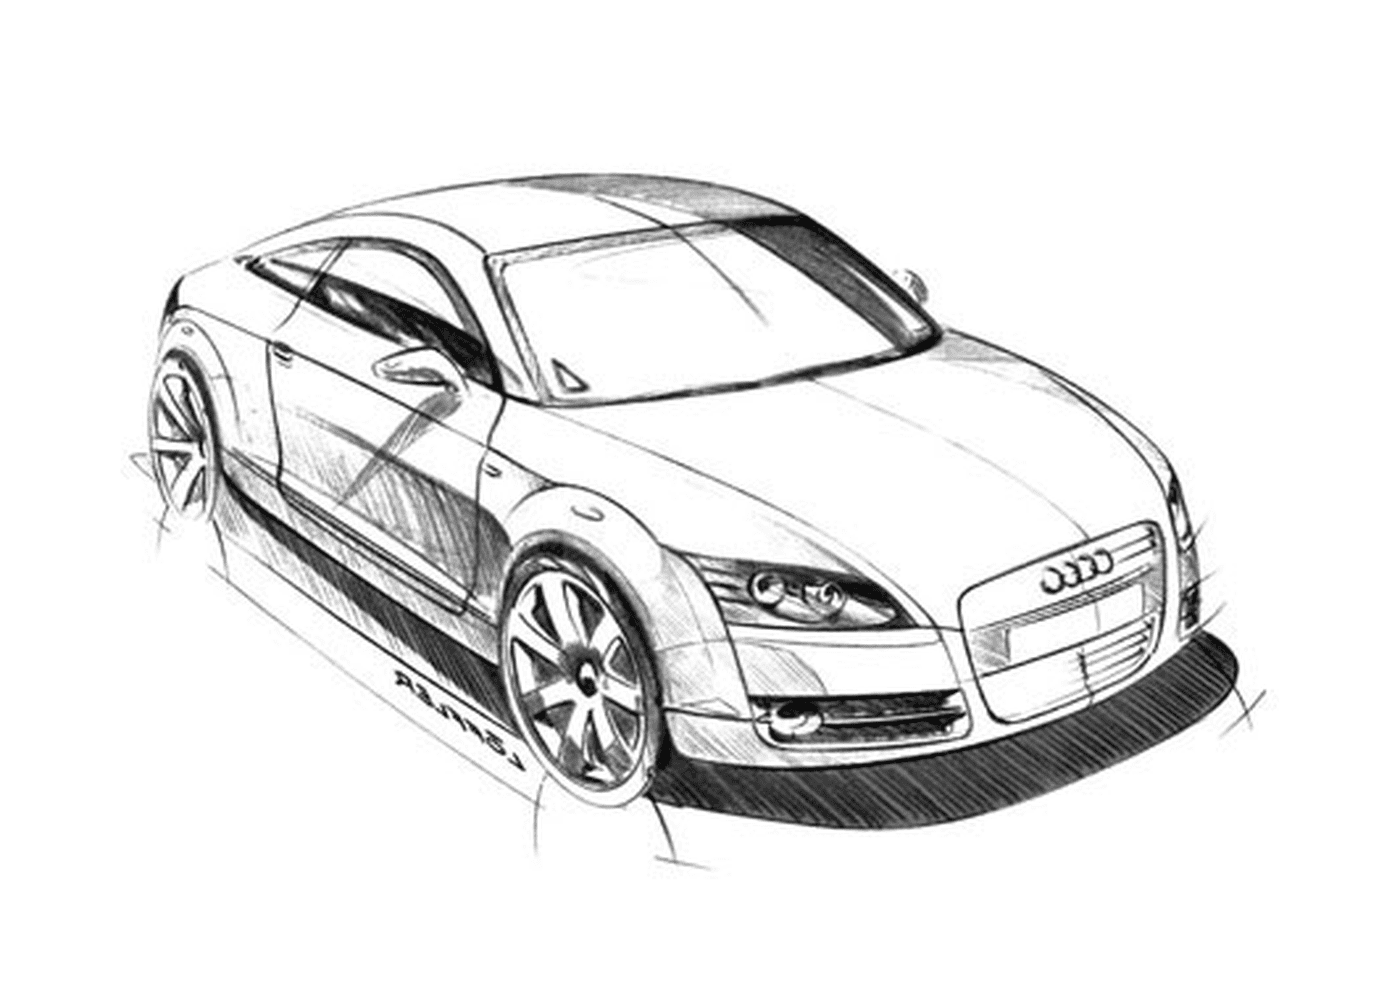  Audi汽车形象,Audi汽车 